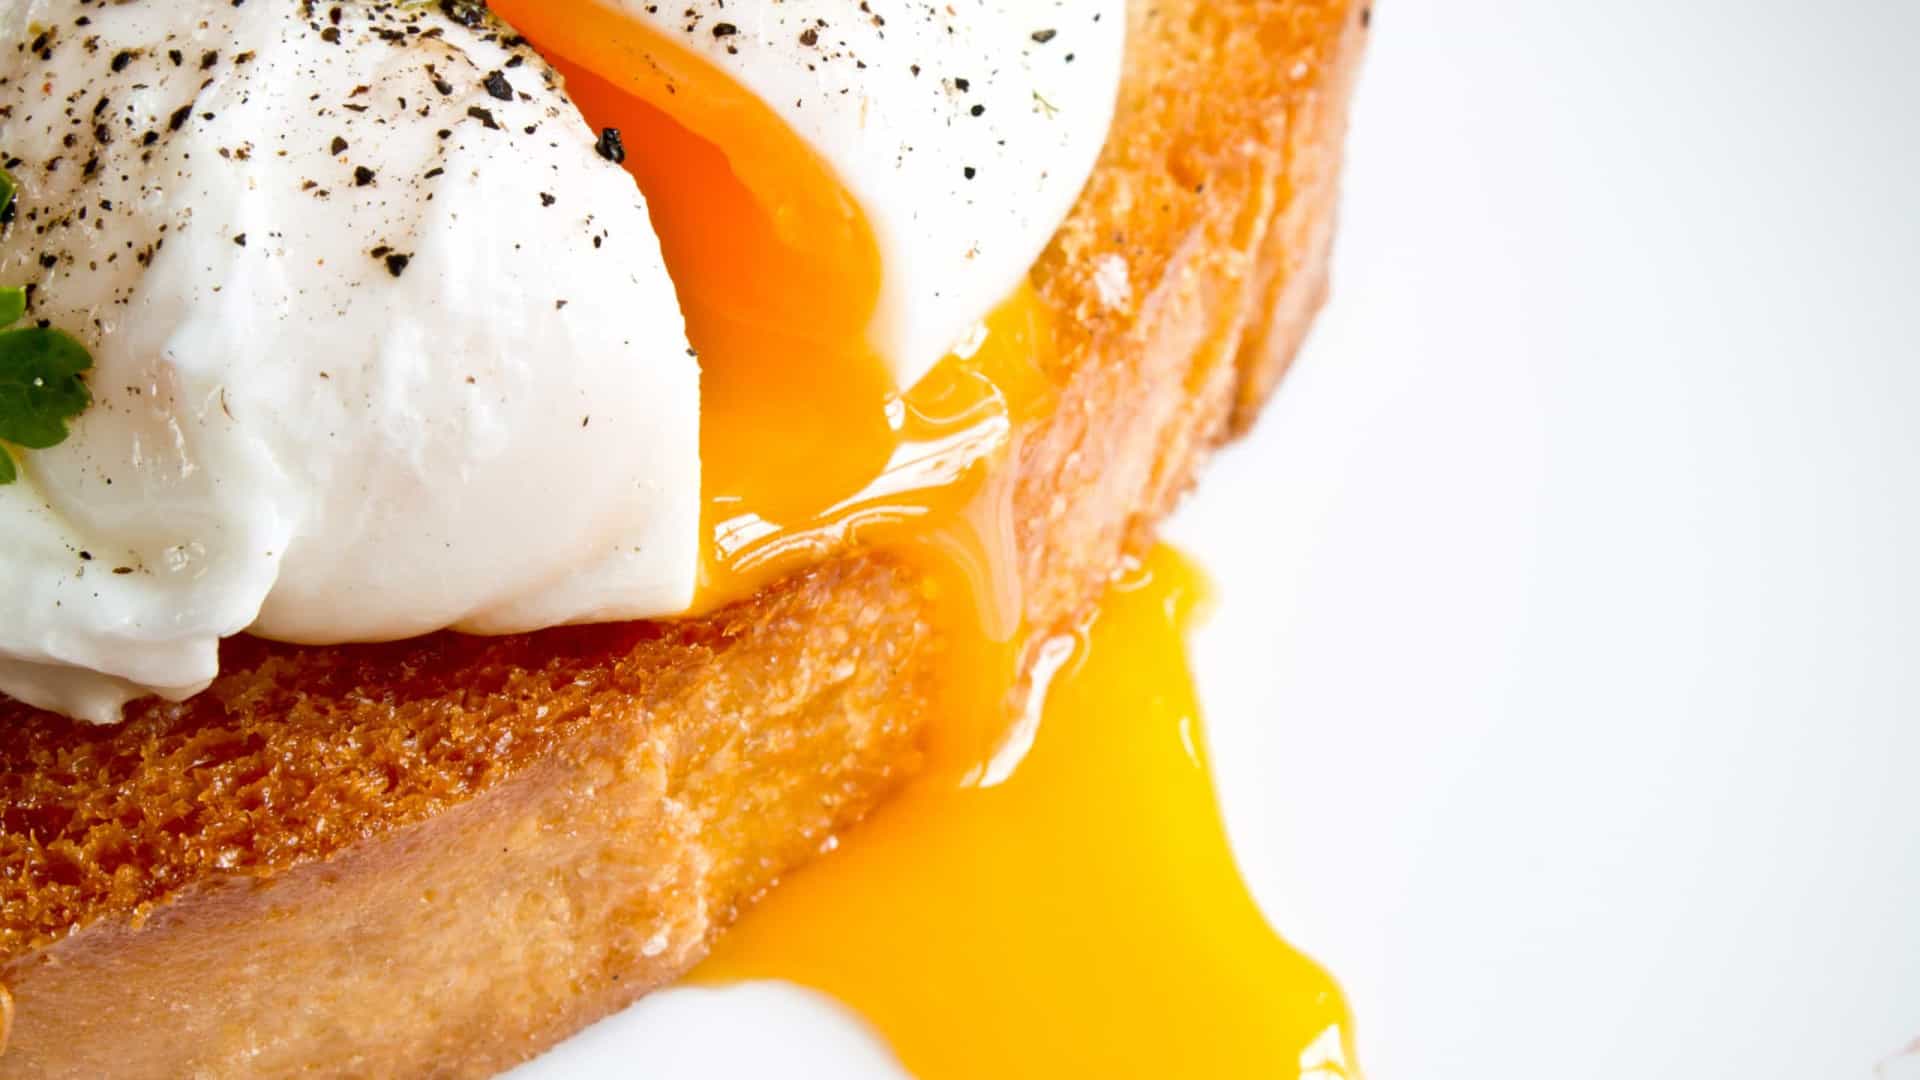 É seguro comer ovos mal cozidos? Saiba o que dizem os especialistas